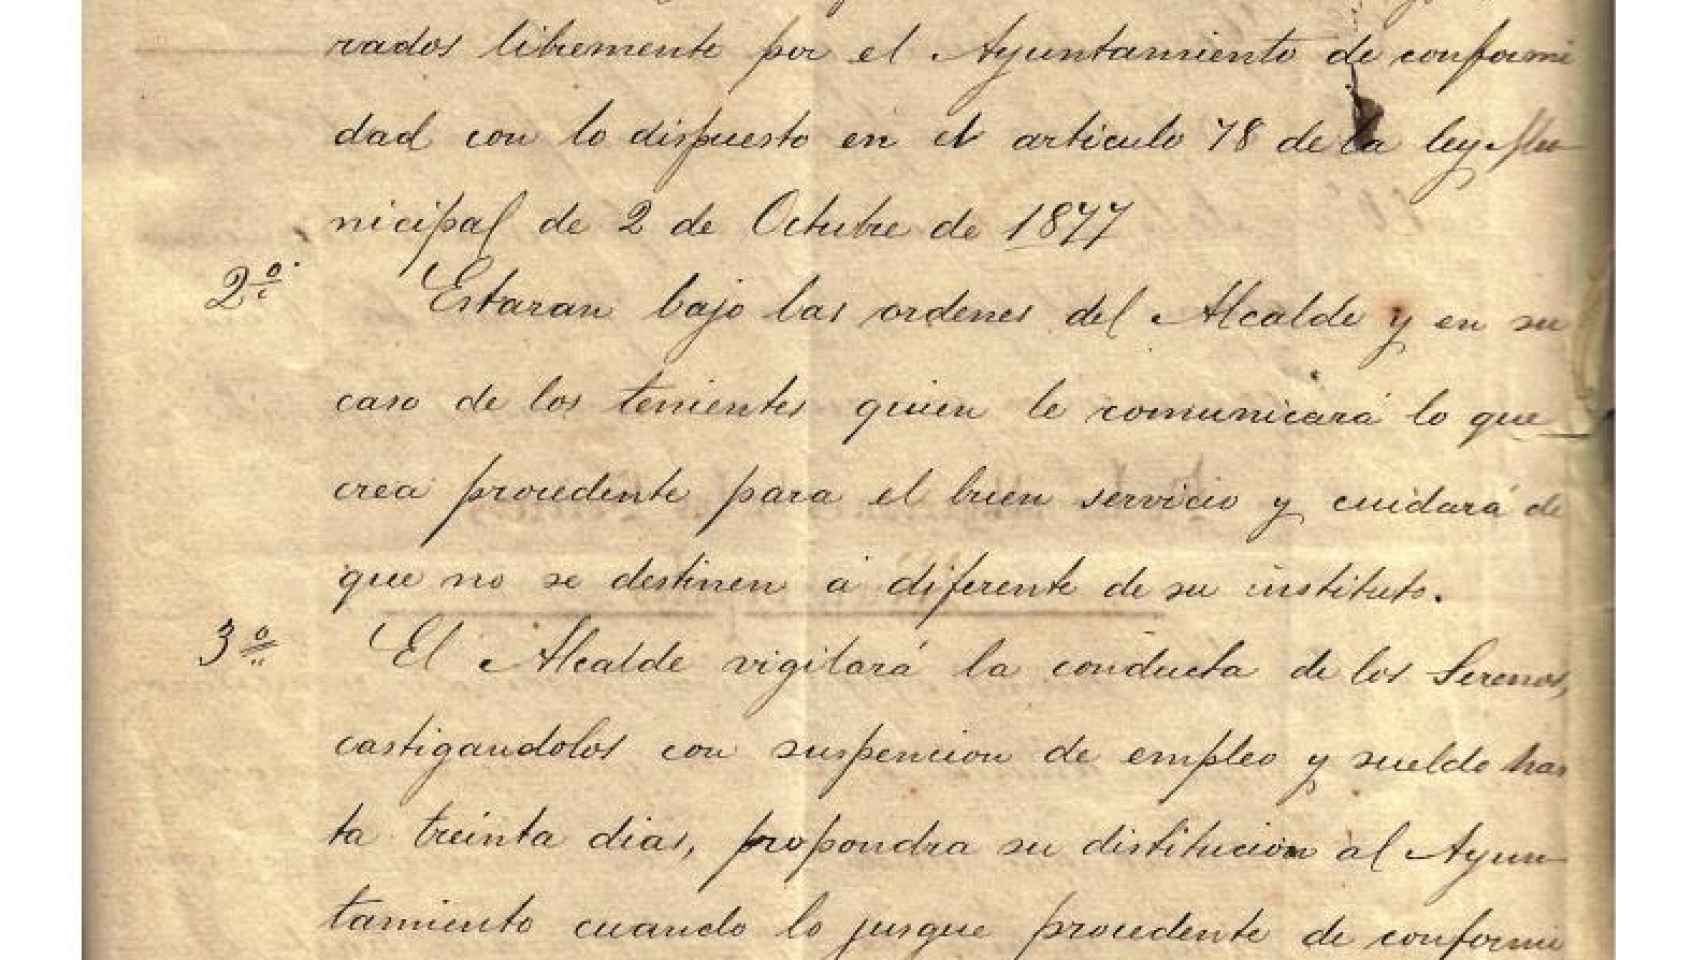 El reglamento del Ayuntamiento de Crevillente sobre el sereno con fecha de 1884.